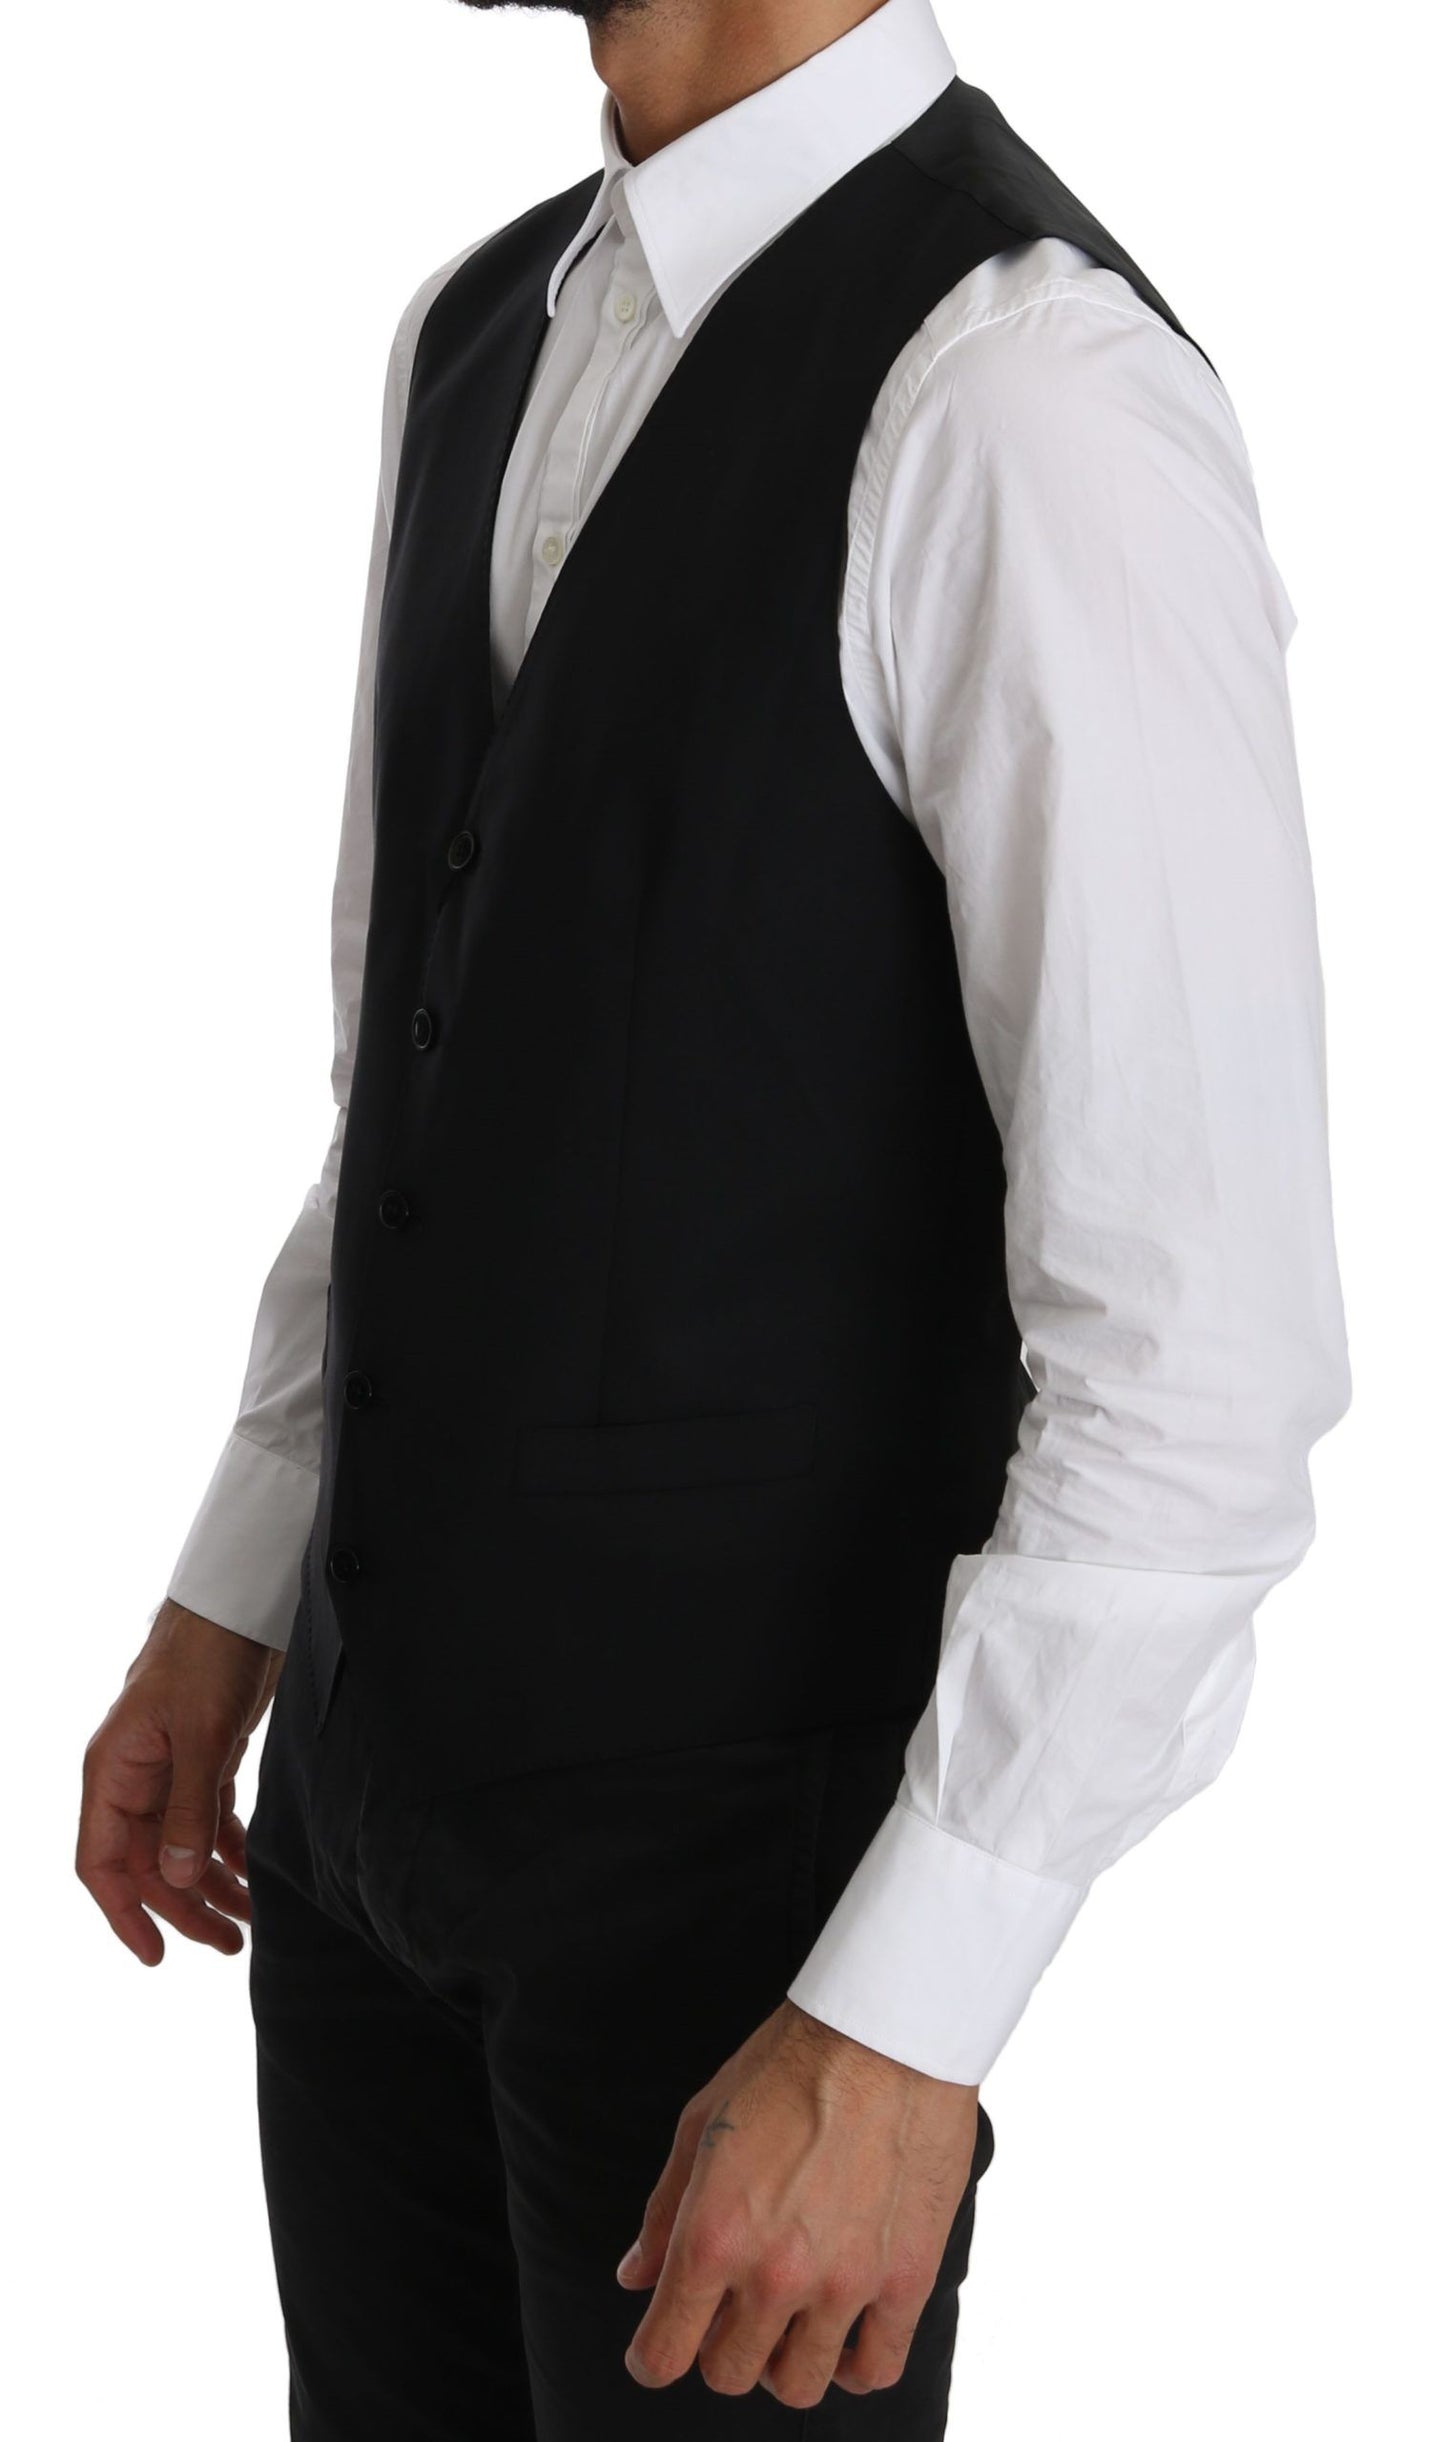 Dolce & Gabbana Black Waistcoat Formal Gilet Dress Wool  Vest